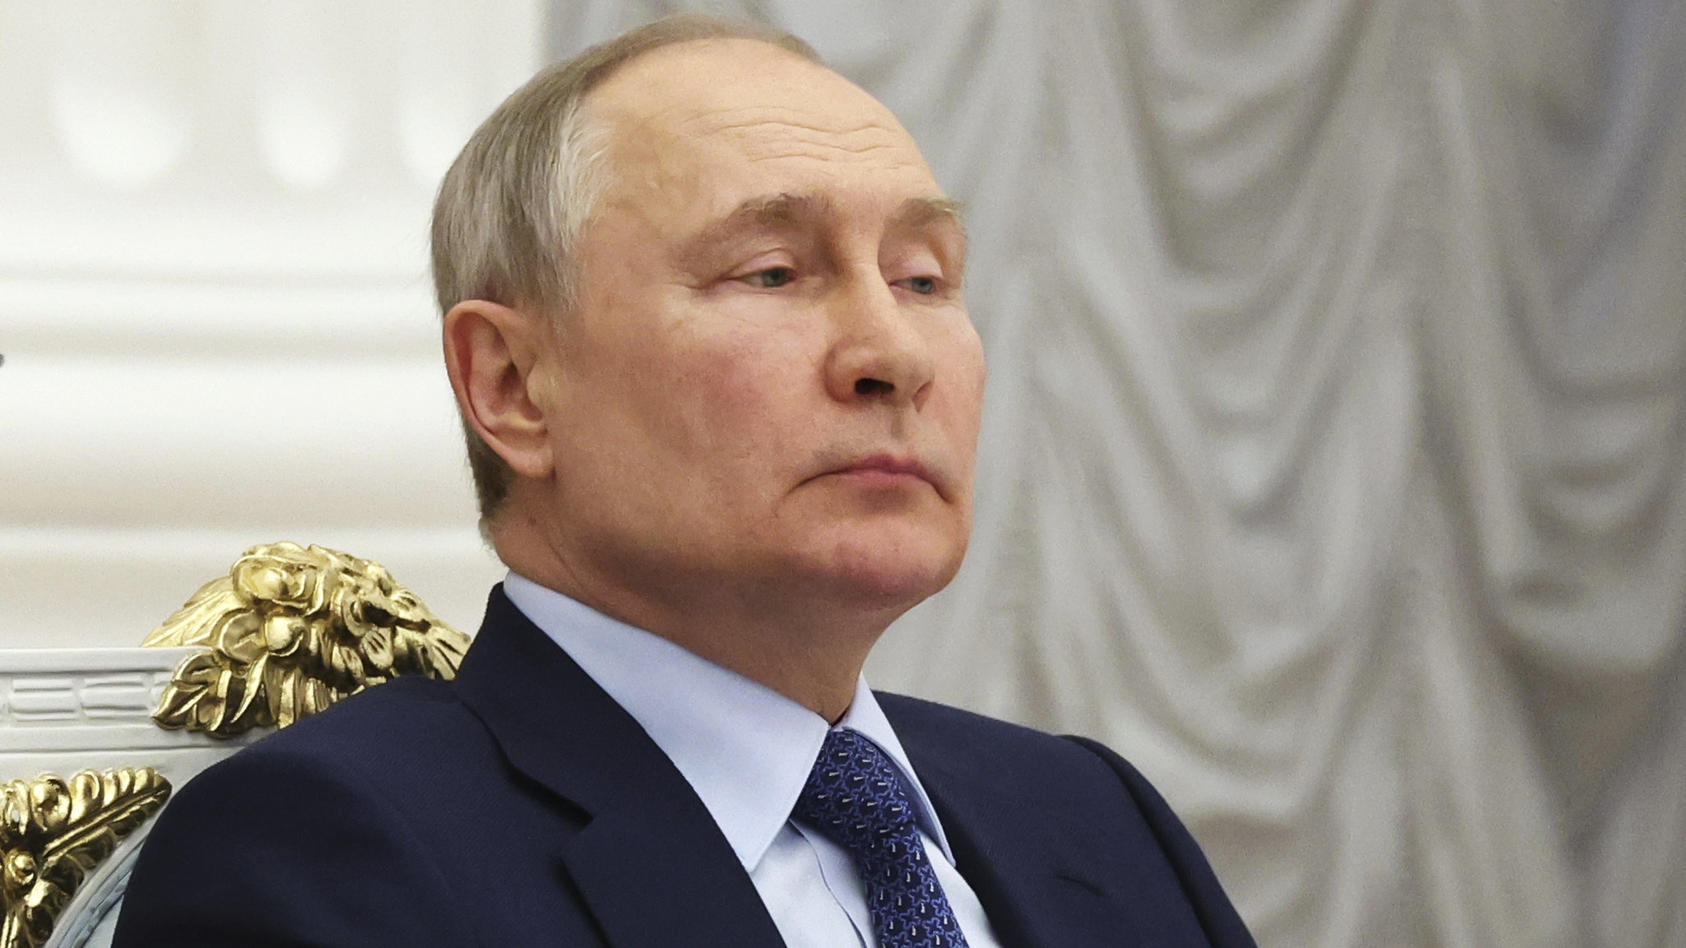 26.05.2023, Russland, Moskau: Das von der staatlichen russischen Nachrichtenagentur Sputnik via AP veröffentlichte Bild zeigt Wladimir Putin, Präsident von Russland, während einem Treffen mit Mitgliedern der «Business Russia» im Kreml in Moskau. Unge